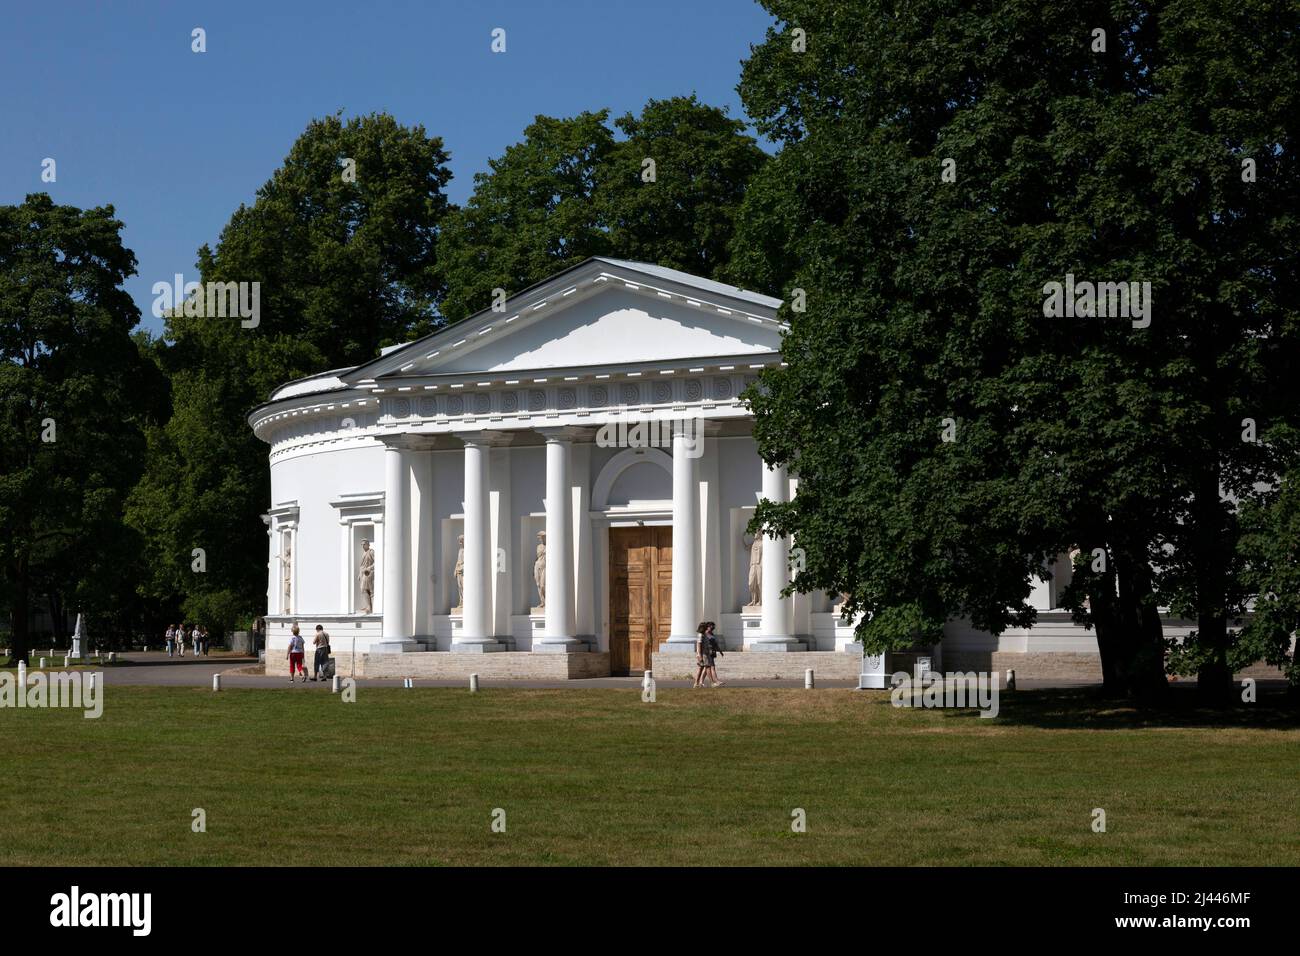 Saint-Pétersbourg, Russie - 17 juillet 2021 : vue sur le palais d'Elagon à Saint-Pétersbourg dans le parc central de la culture et des loisirs Banque D'Images